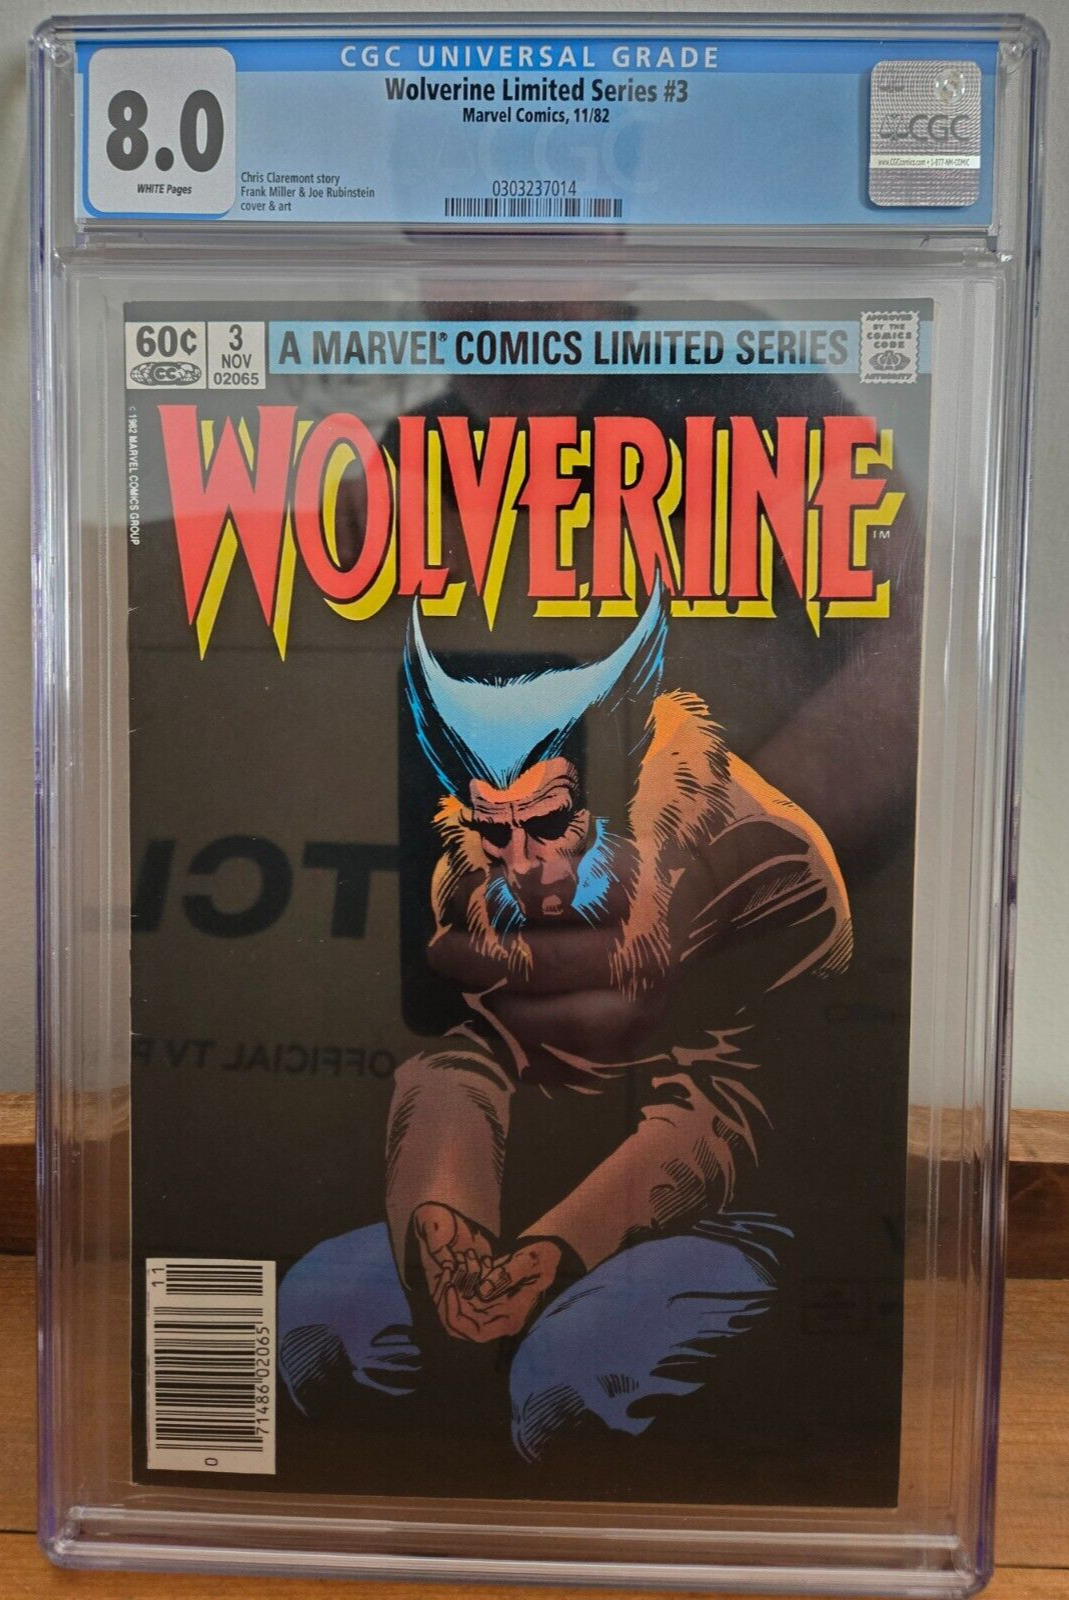 Wolverine Limited Series #3 - Frank Miller - CGC 8.0 Newsstand